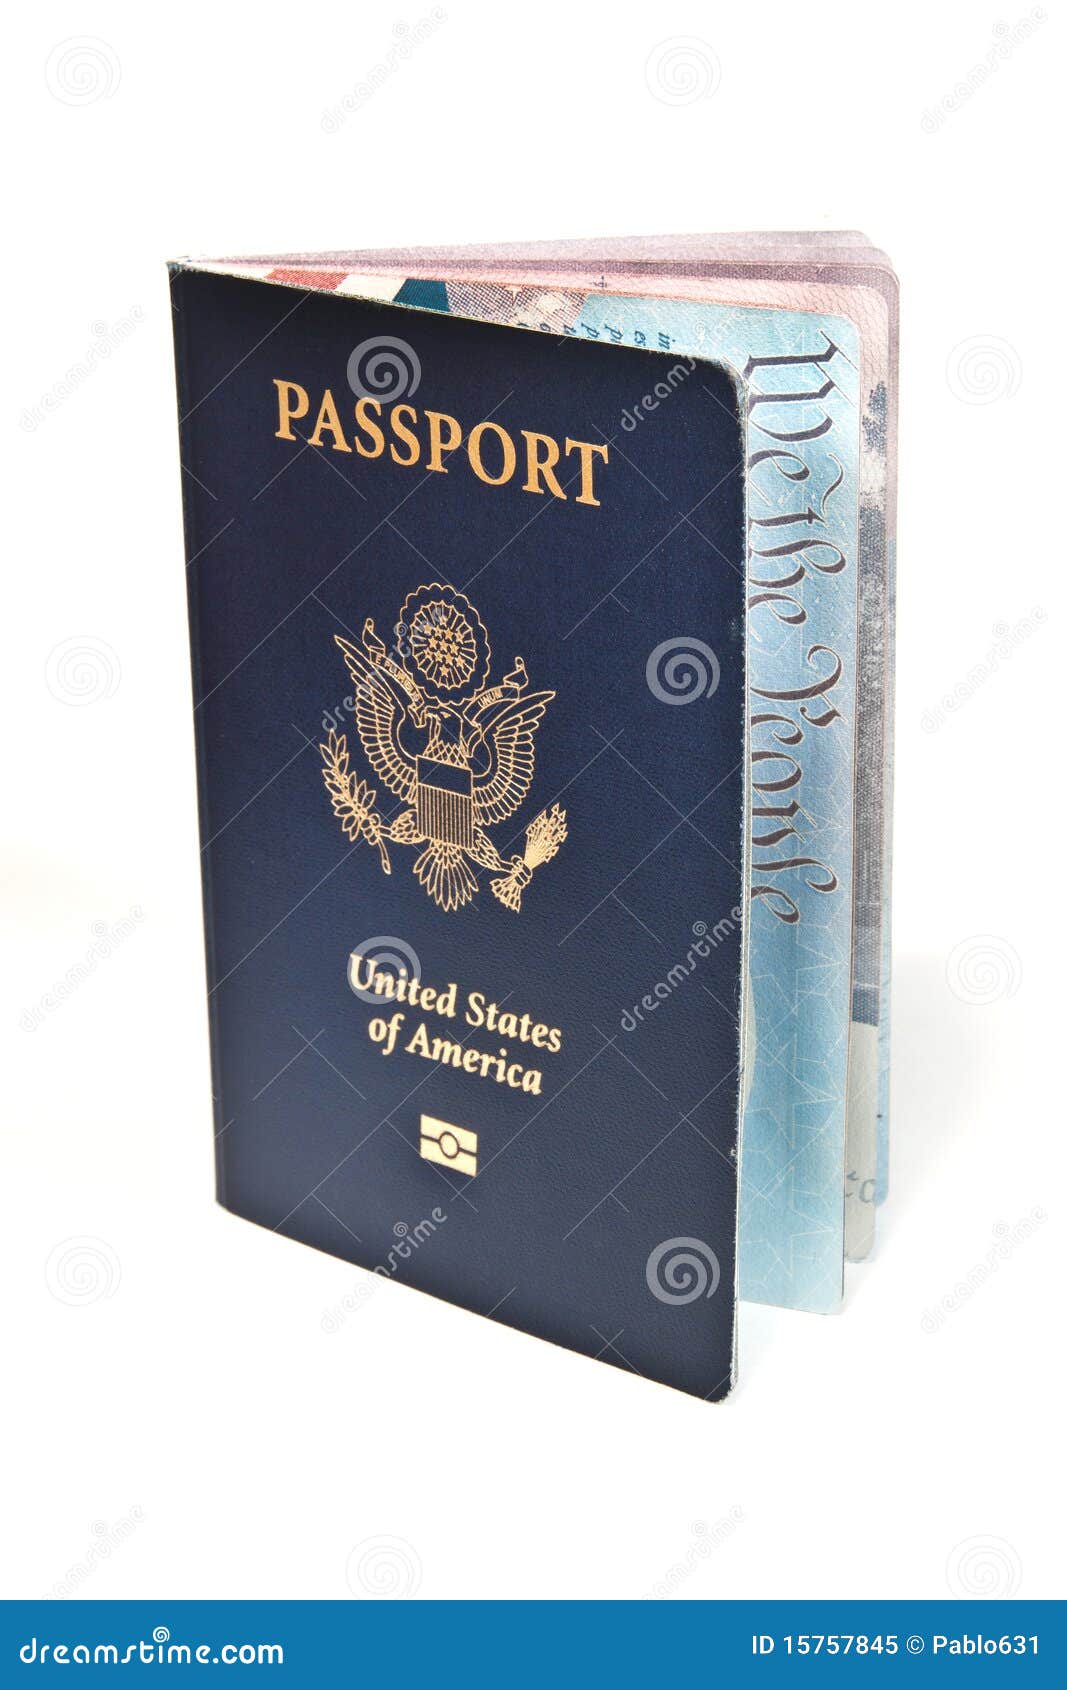 Hình ảnh passport trắng sẽ làm bạn thấy ngay sự thanh lịch và chuyên nghiệp của nó. Hãy cùng nhìn vào hình ảnh này và cảm nhận sự kiêu sa và sang trọng của passport trắng nhé!